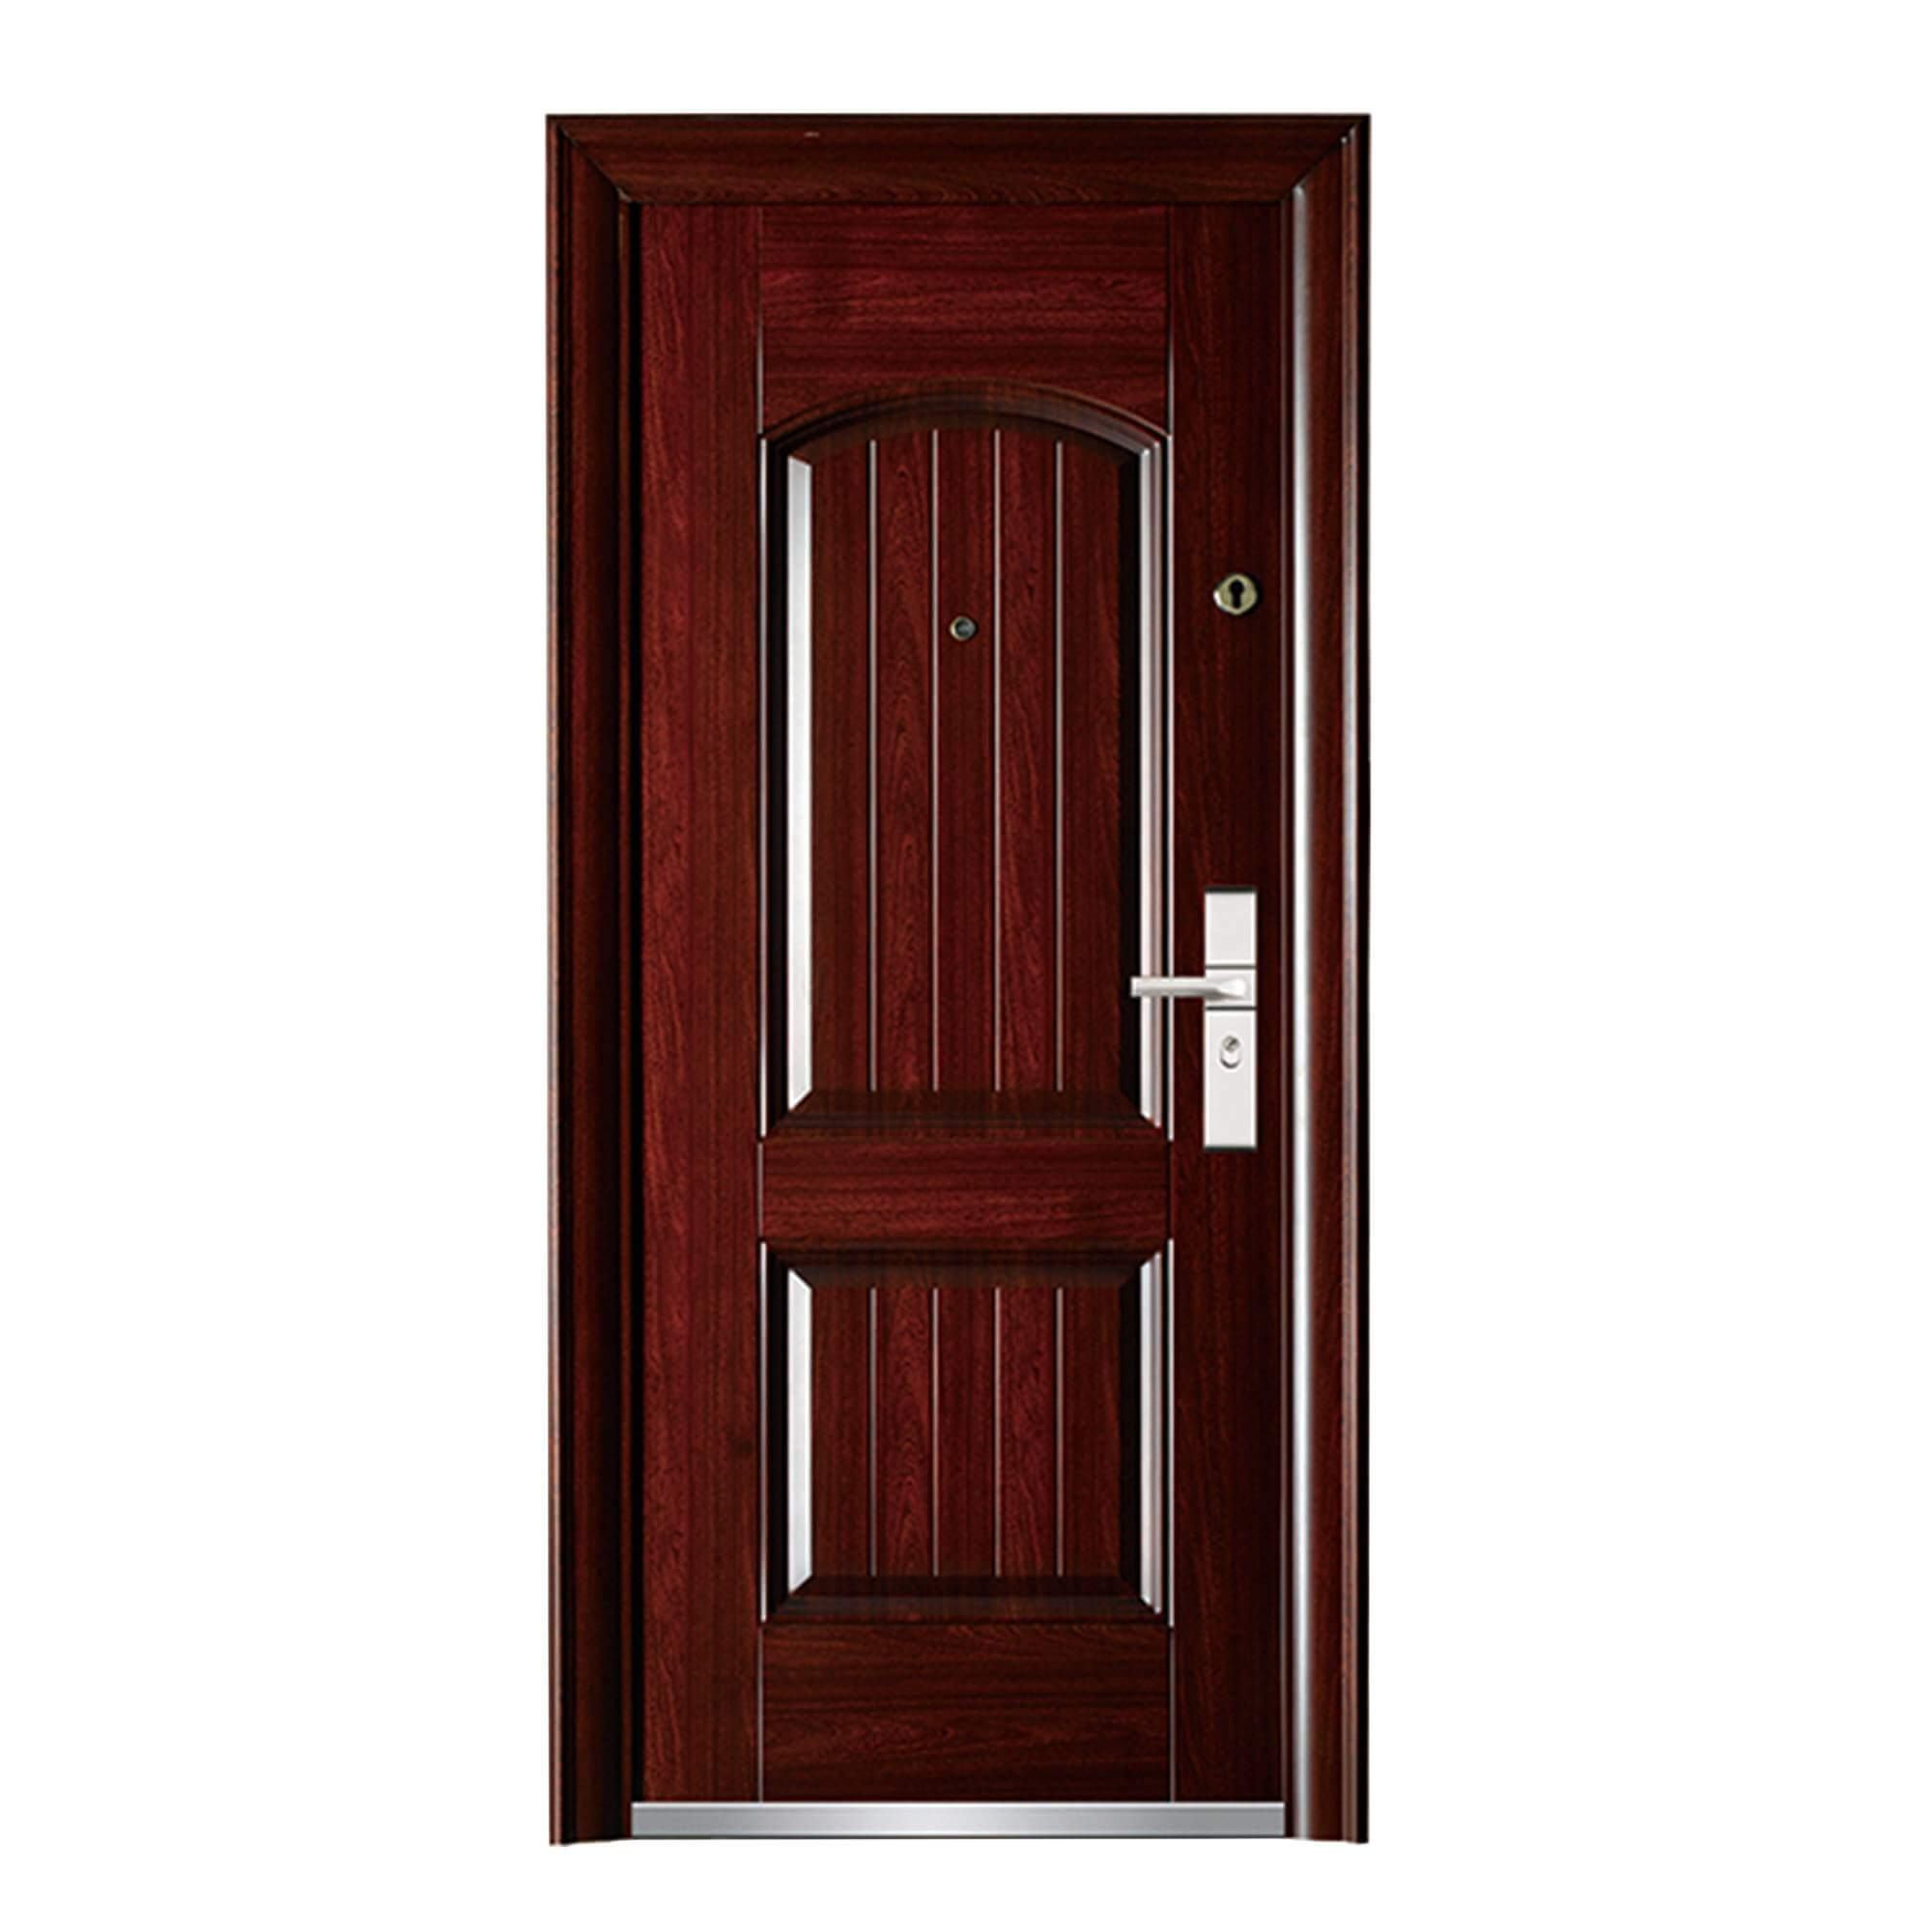 Exterior Steel Security Exterior Door for Home